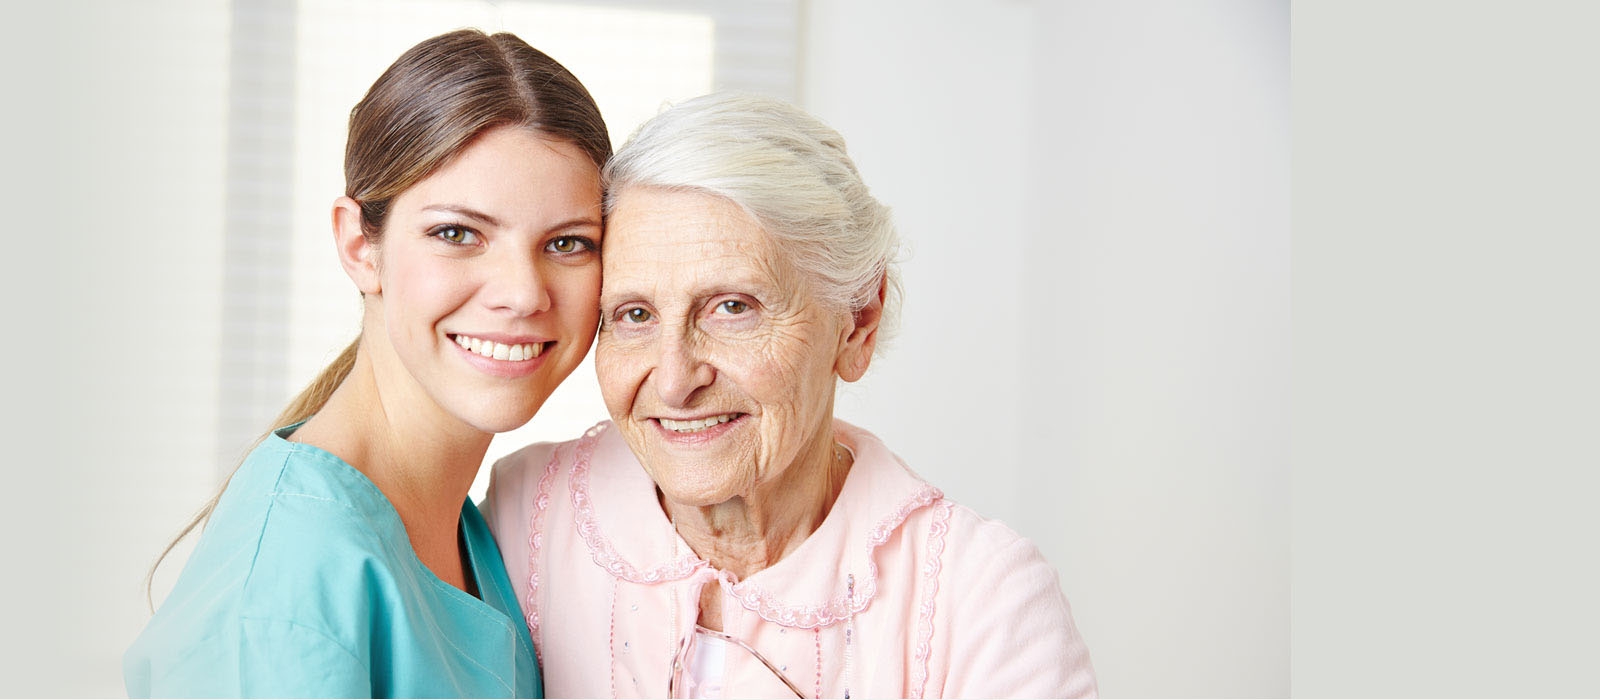 Artigo – Para pacientes idosos, focar no que importa pode ser o melhor remédio